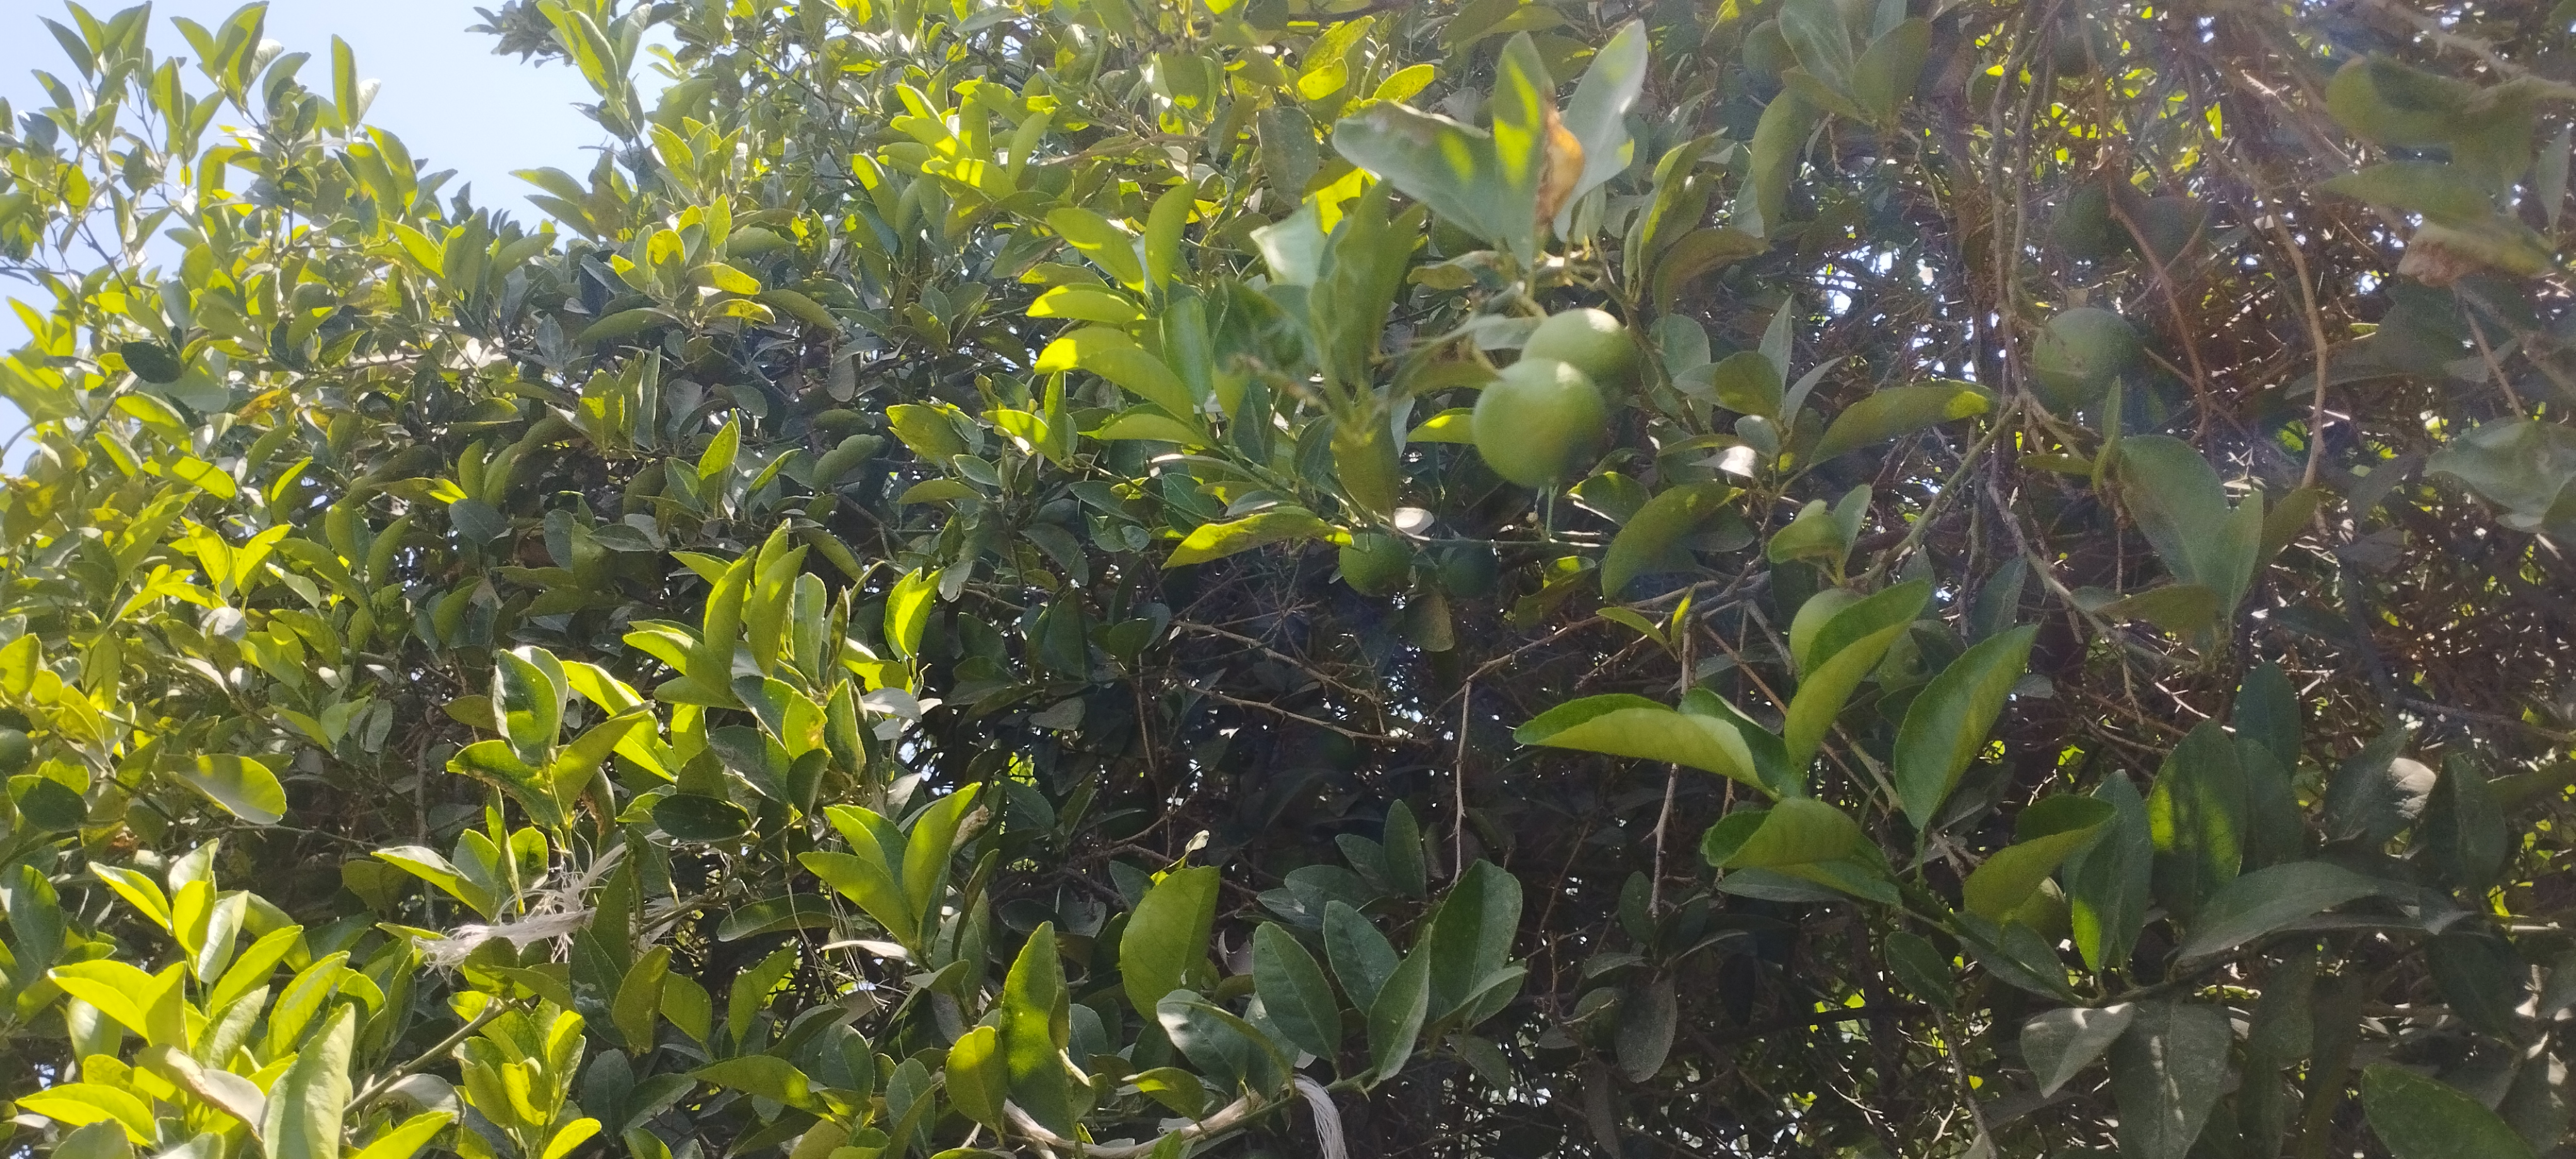 اشجار الليمون تزين مزارع المنيا (4)